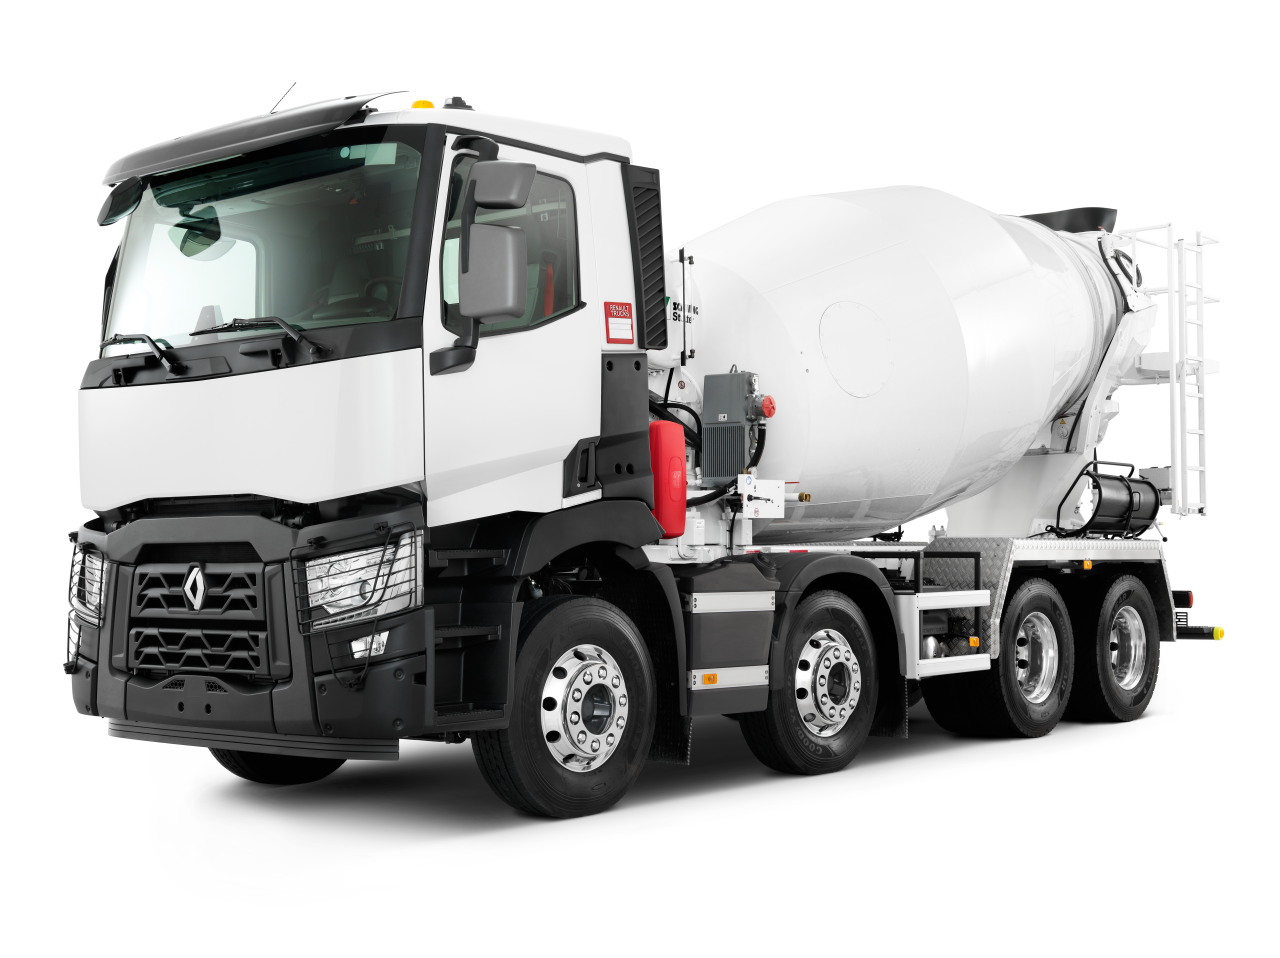 Camion béton toupie / Malaxeur, 499 annonces de camion béton